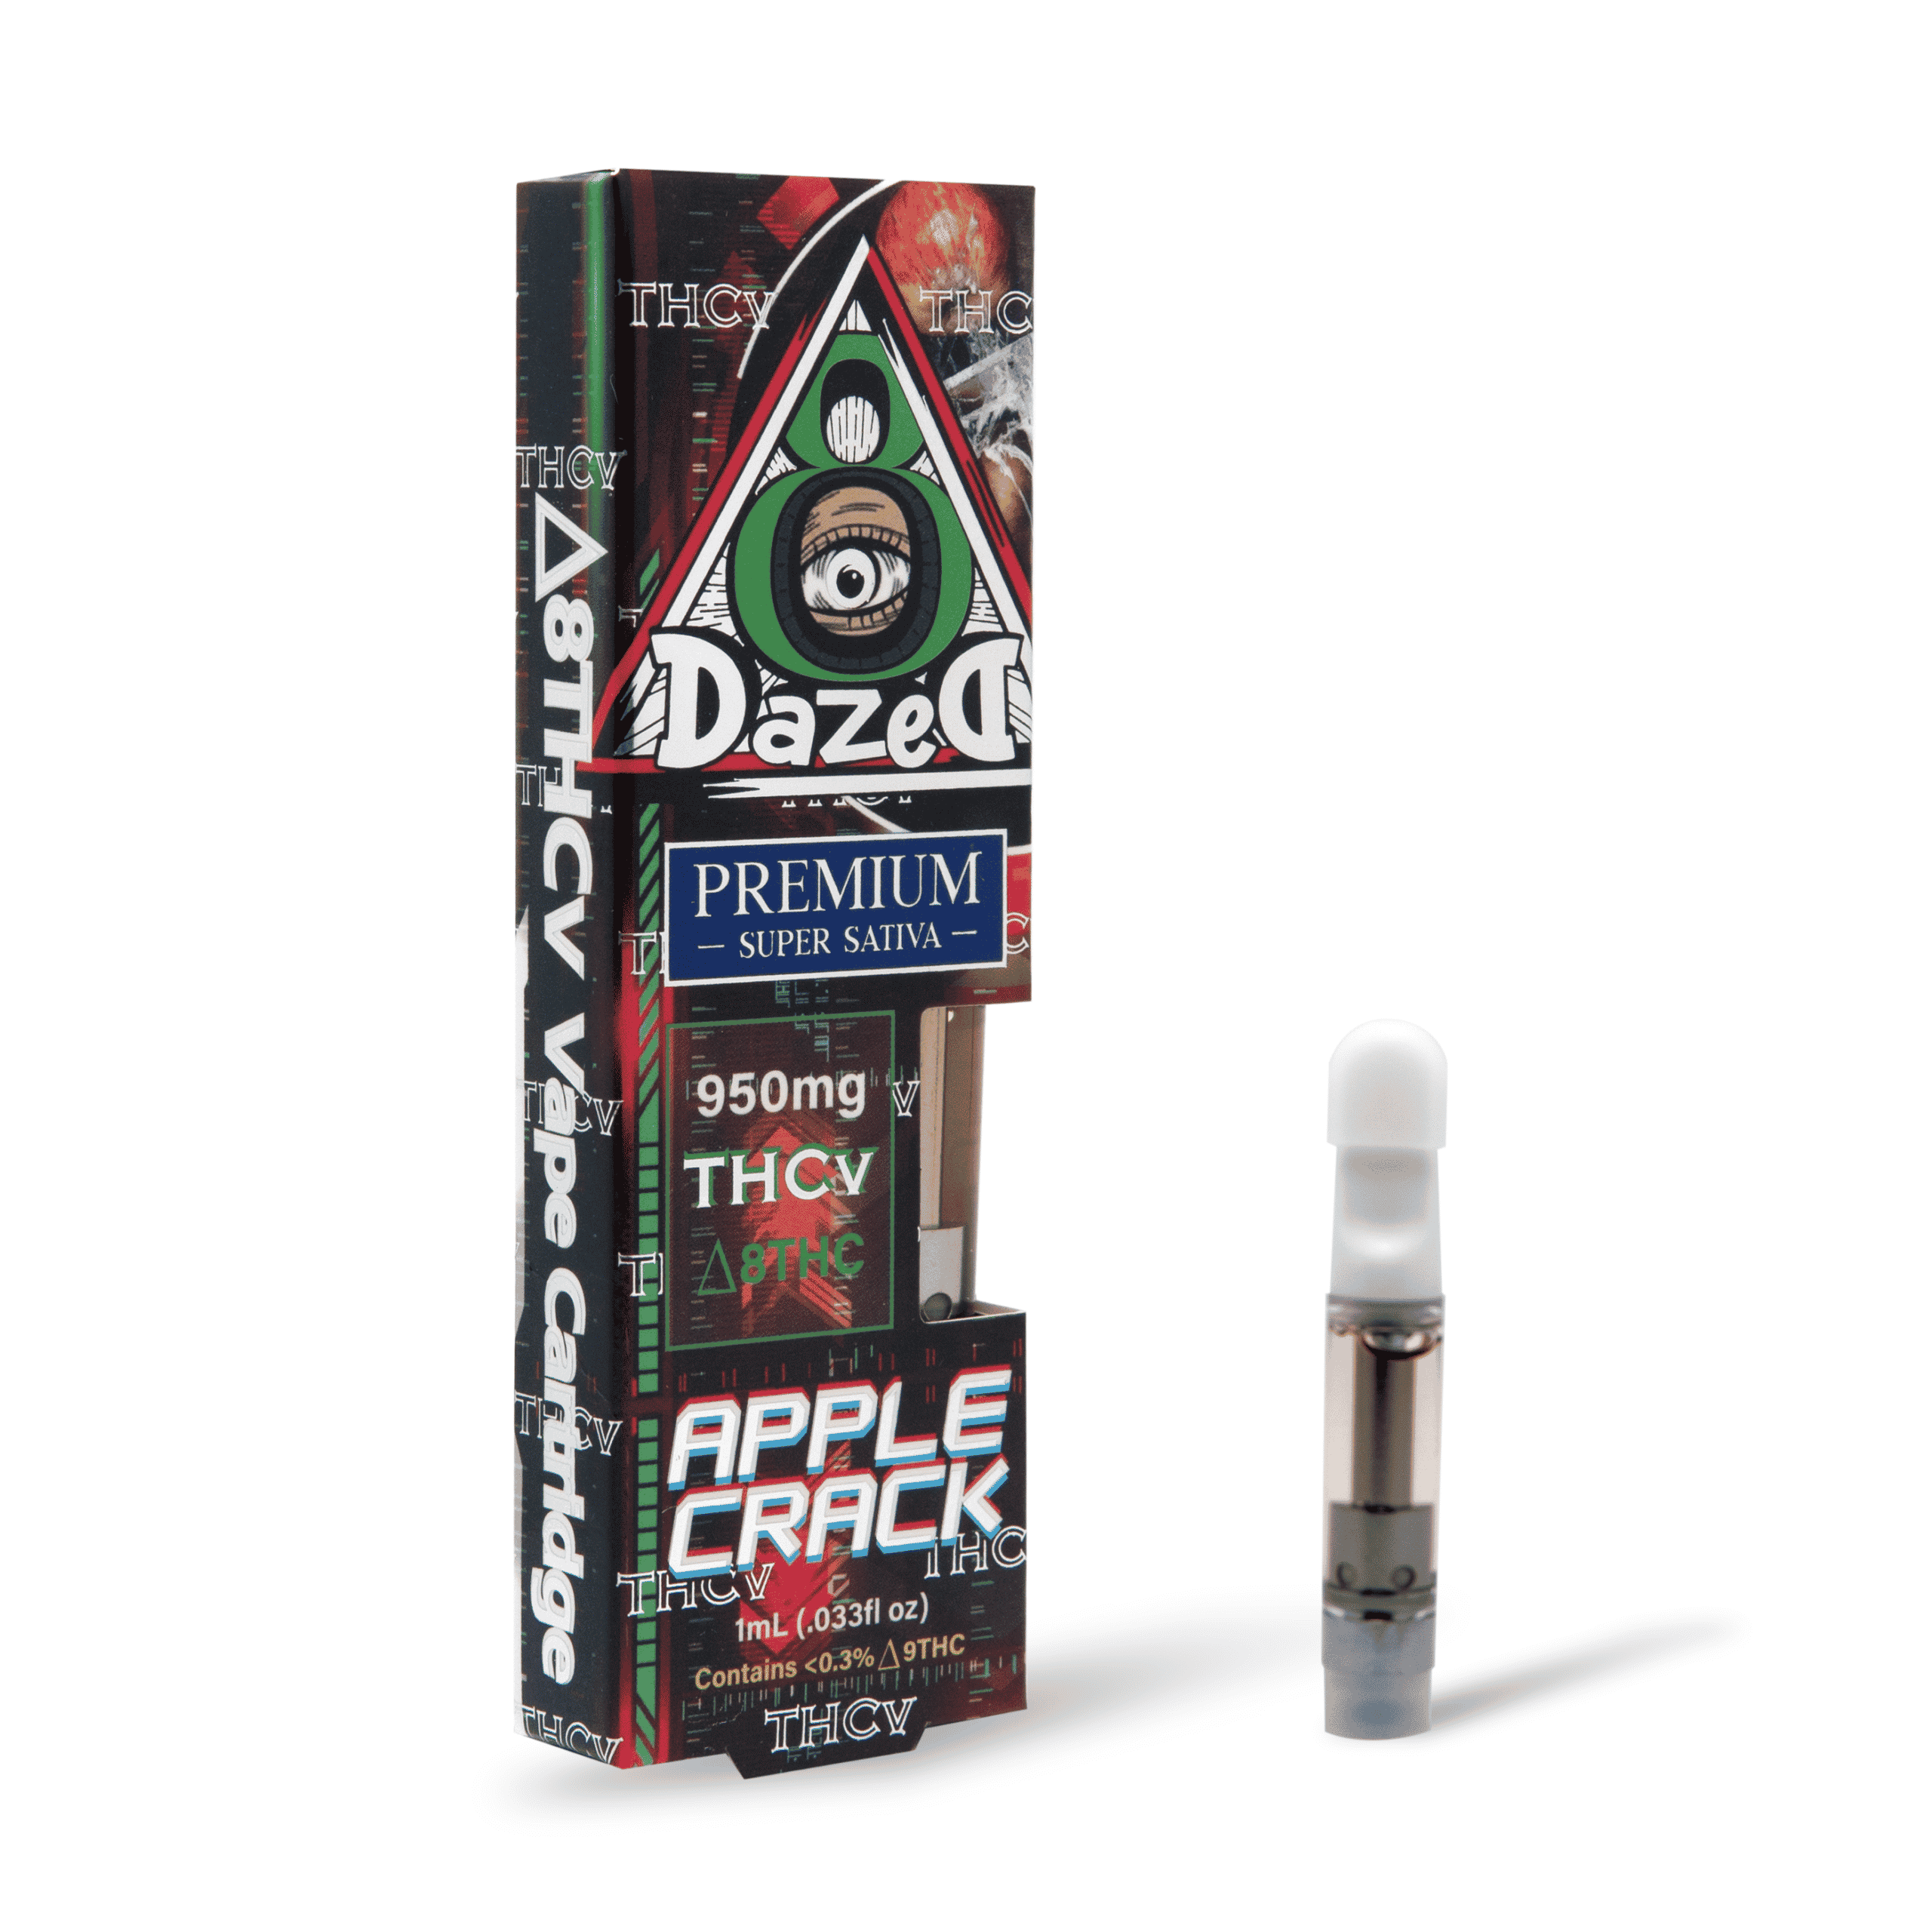 DazeD8 Apple Crack Delta 8 THCV Cartridge (1g) Best Price